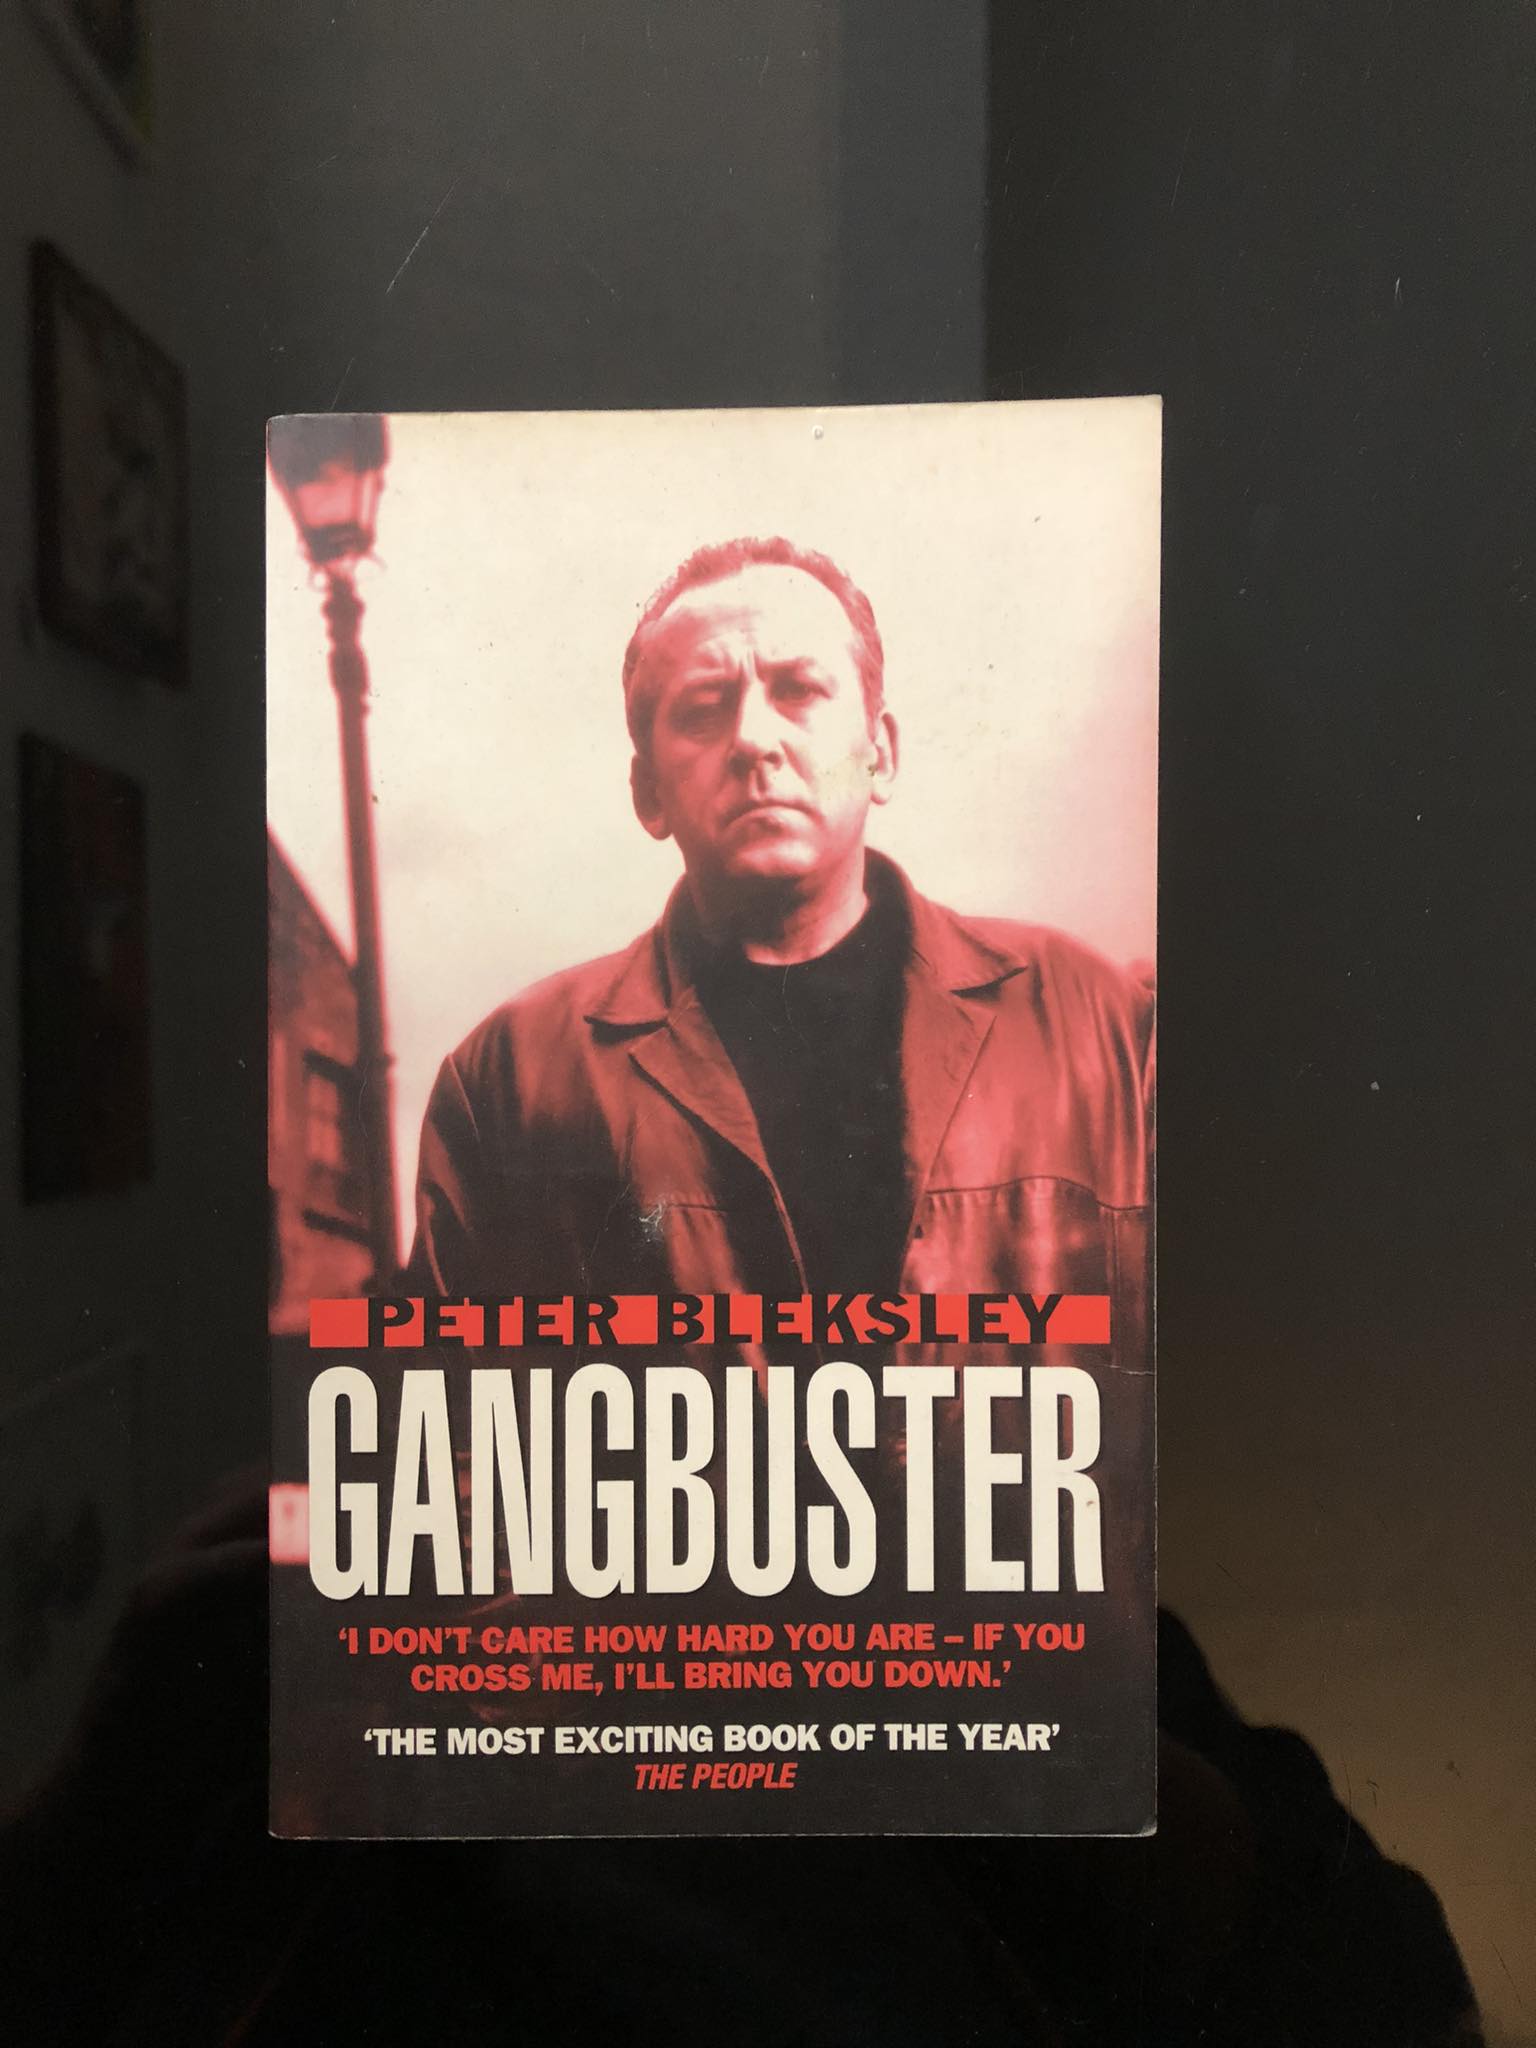 Gangbuster